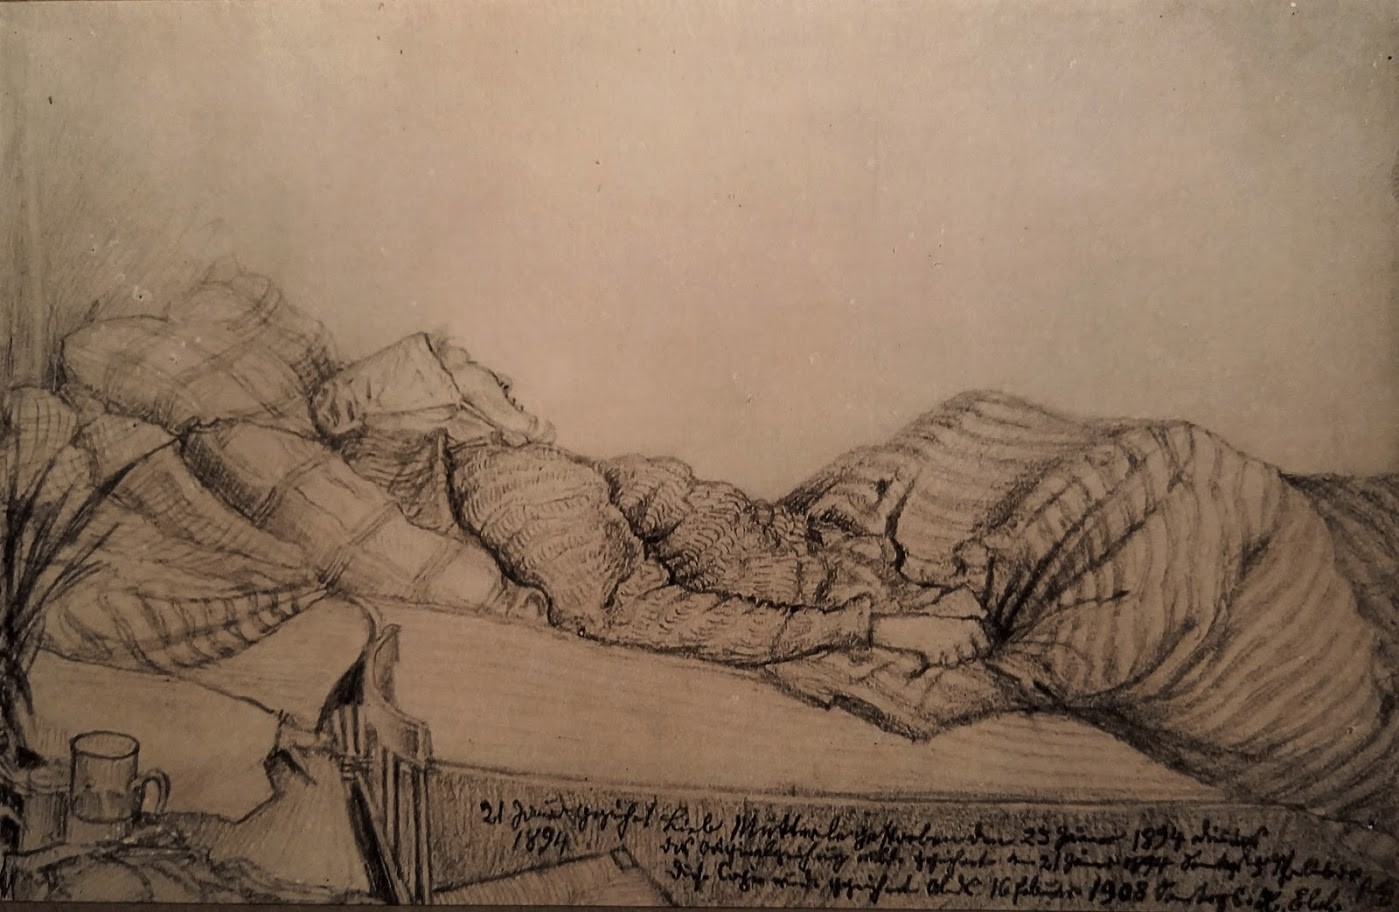 Mère d'Henri Ebel-mourante, crayon sur carton, 18x12-cm, dessin original du 21 janvier 1894, copie du 16 février. 1908, collection particulière